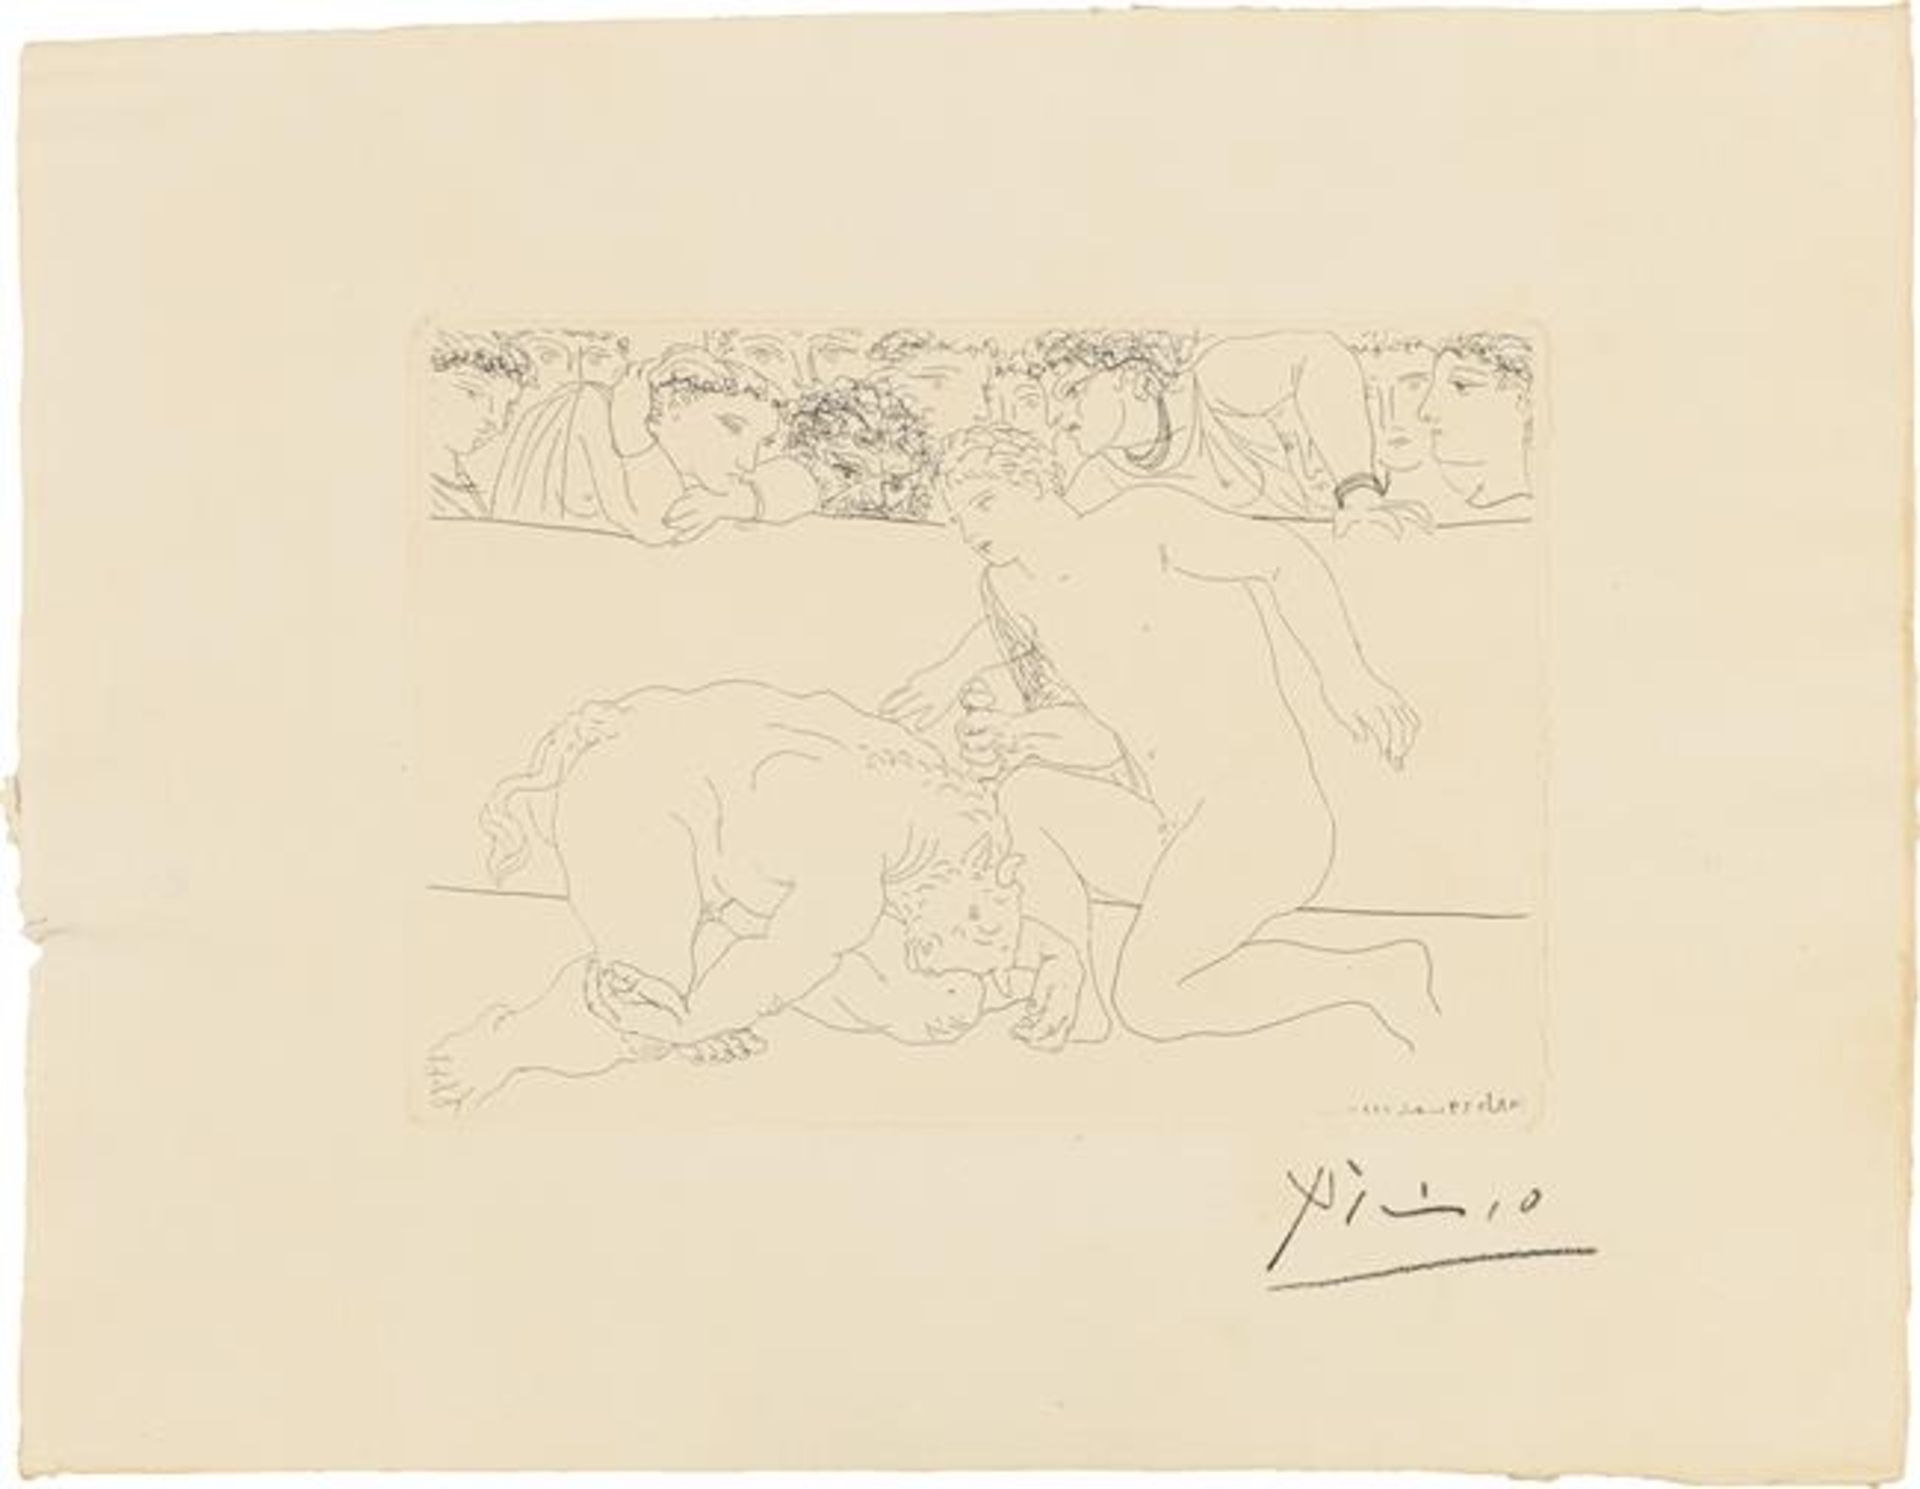 Pablo Picasso: Minotaure vaincu, from "La Suite Vollard"